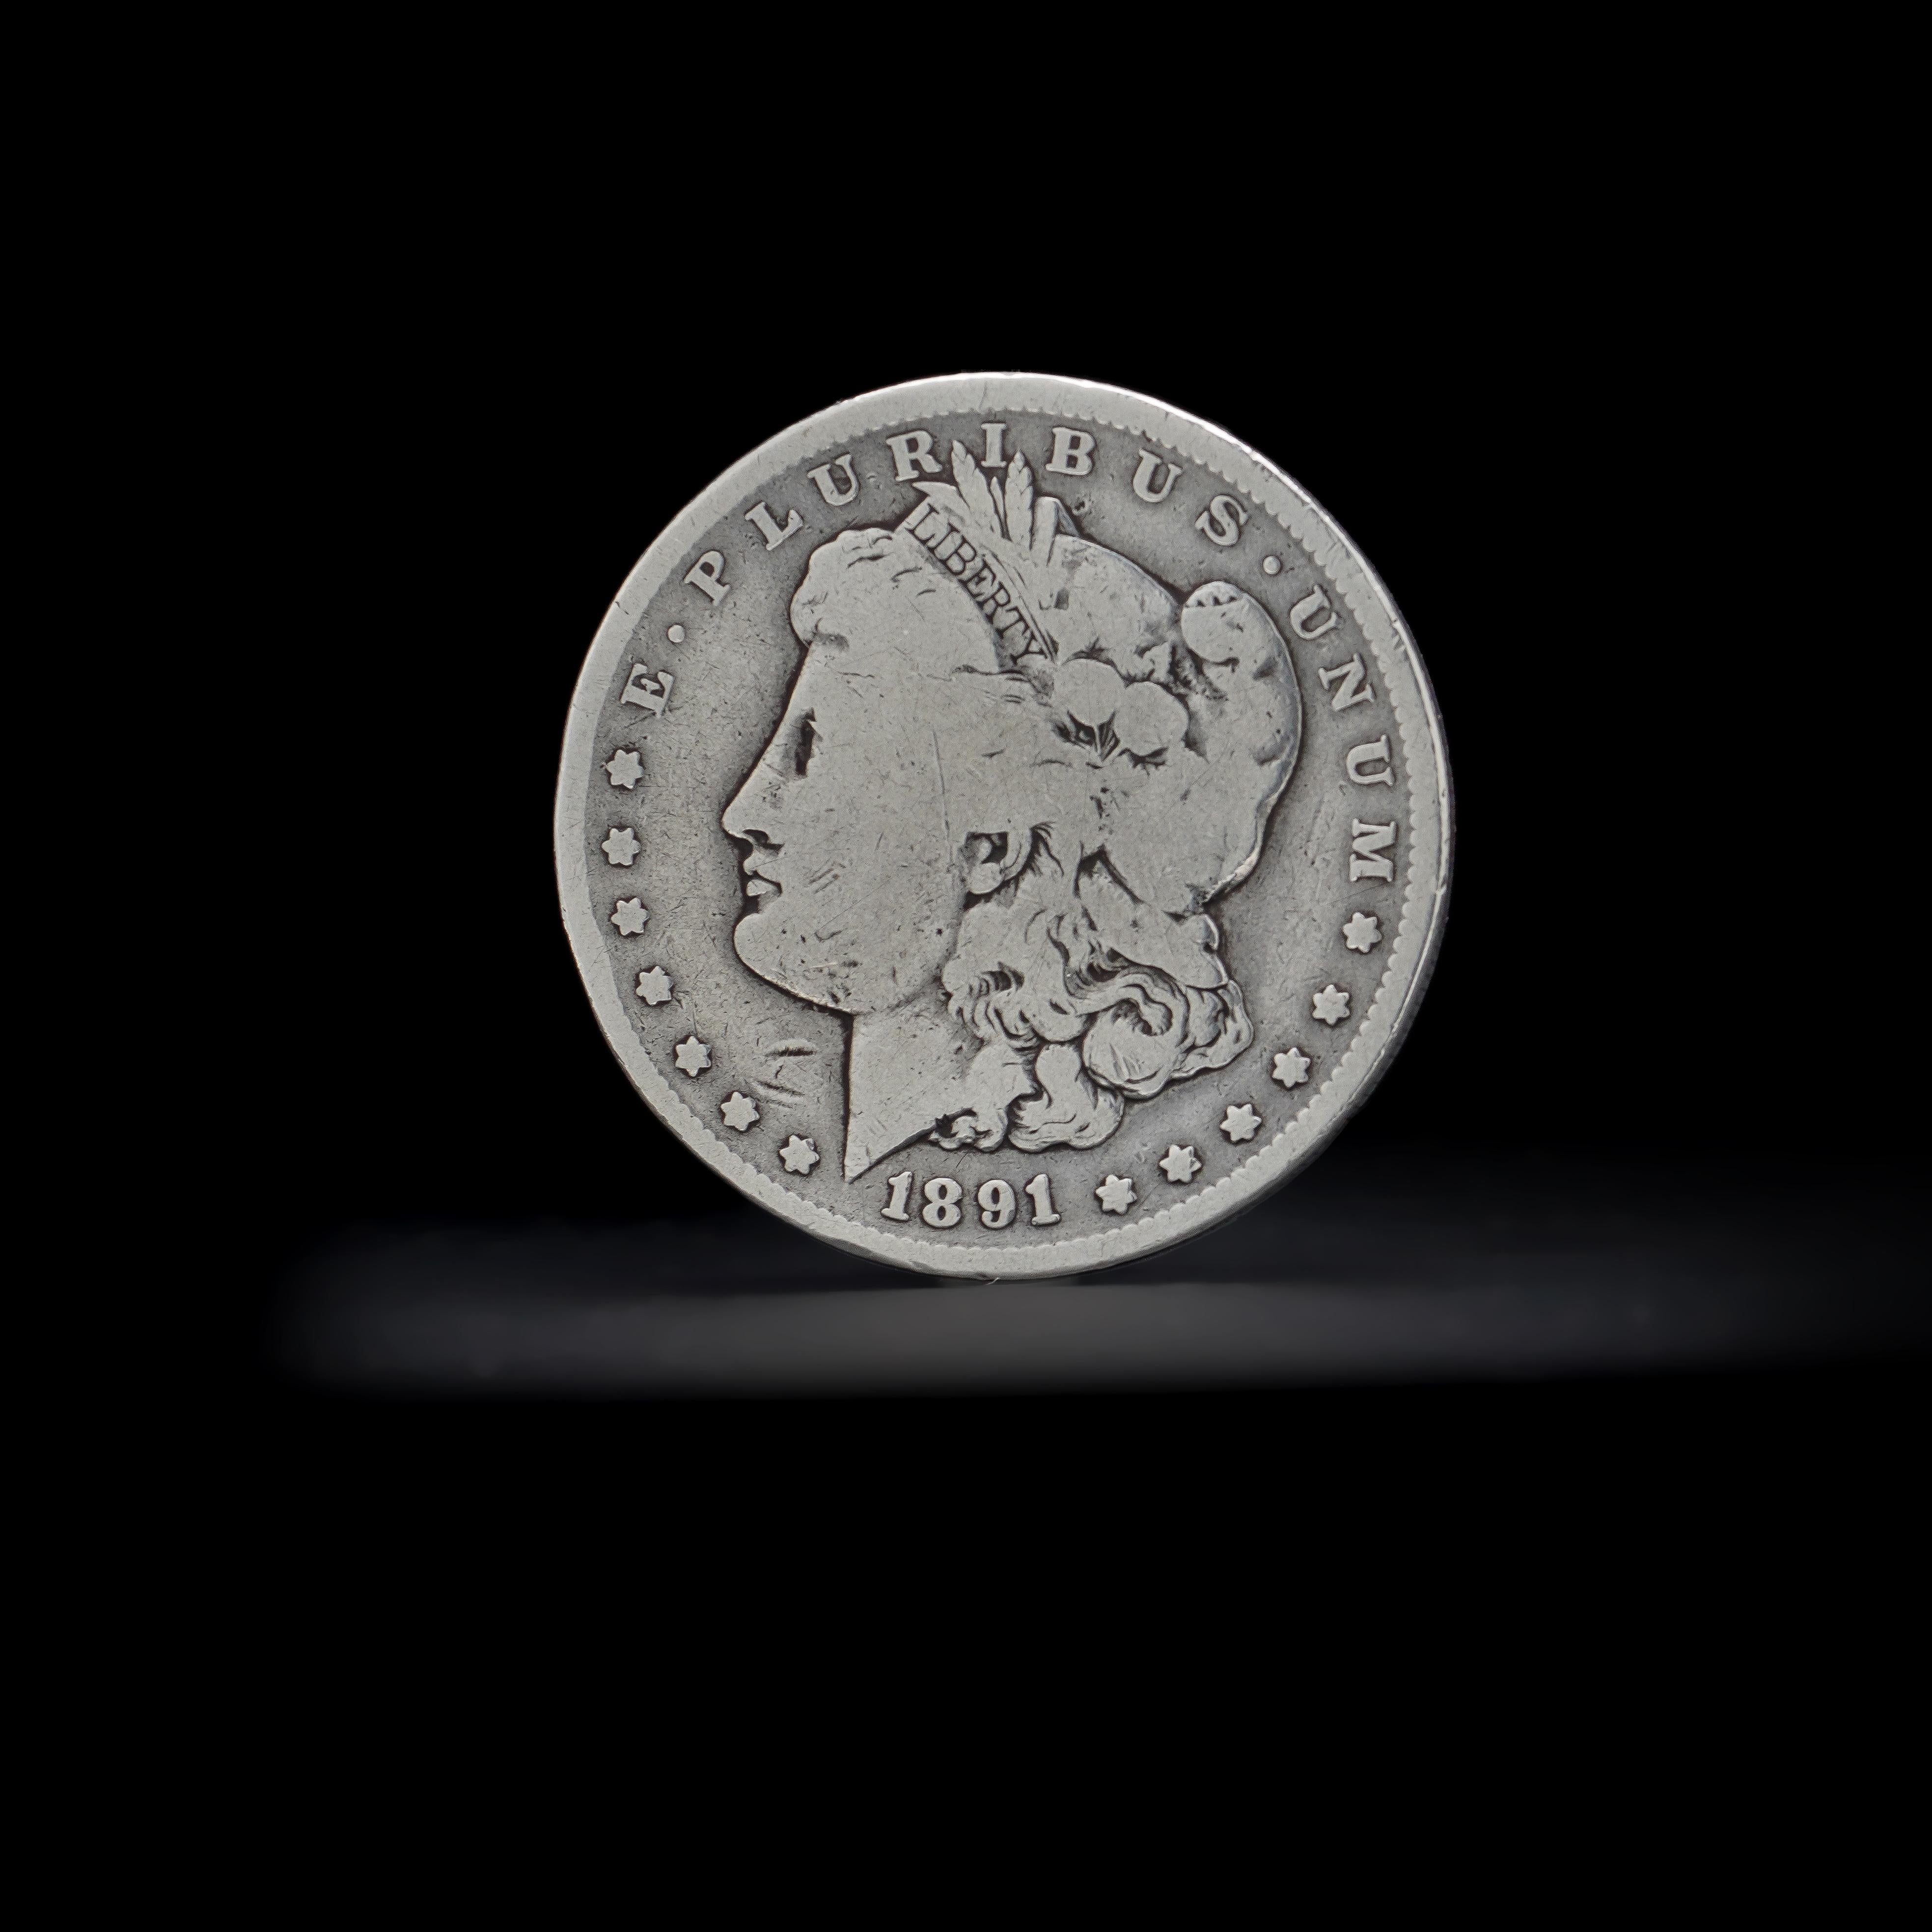 1891 nickel value